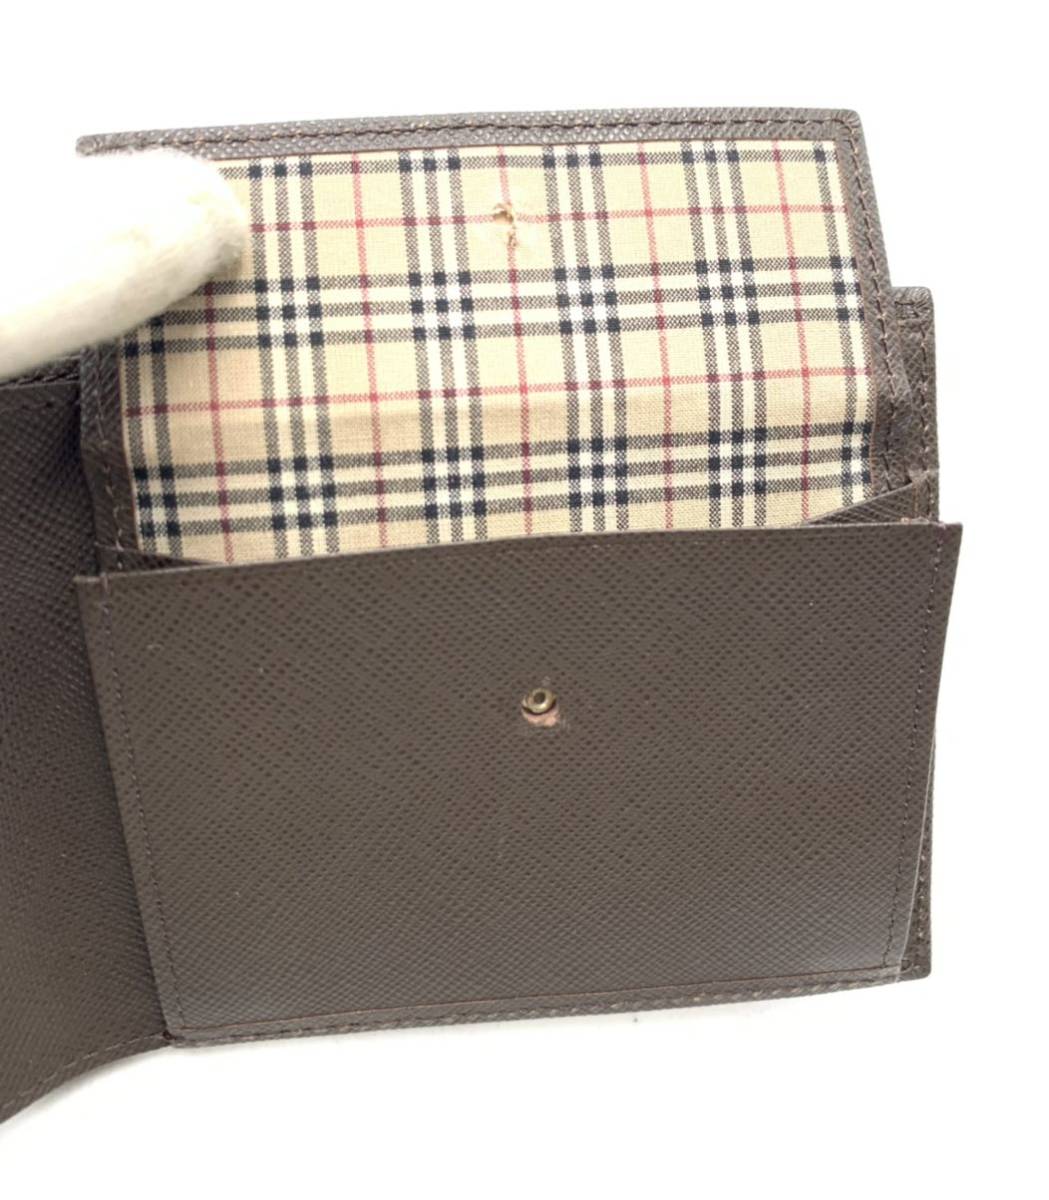  Burberry бренд Brown складывать кошелек кожа noba проверка модный с коробкой 